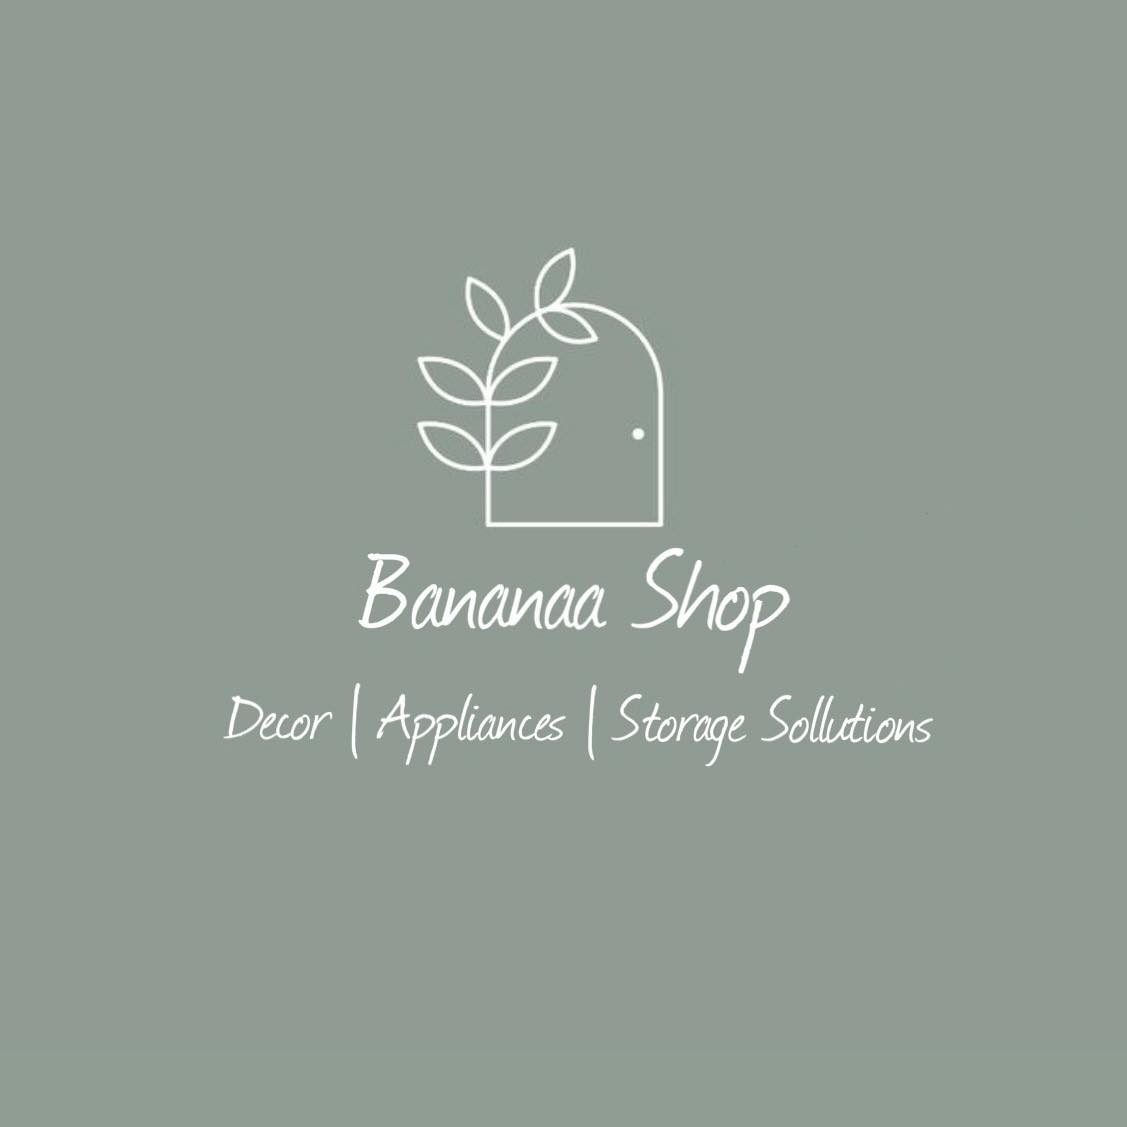 Bananaa Shop